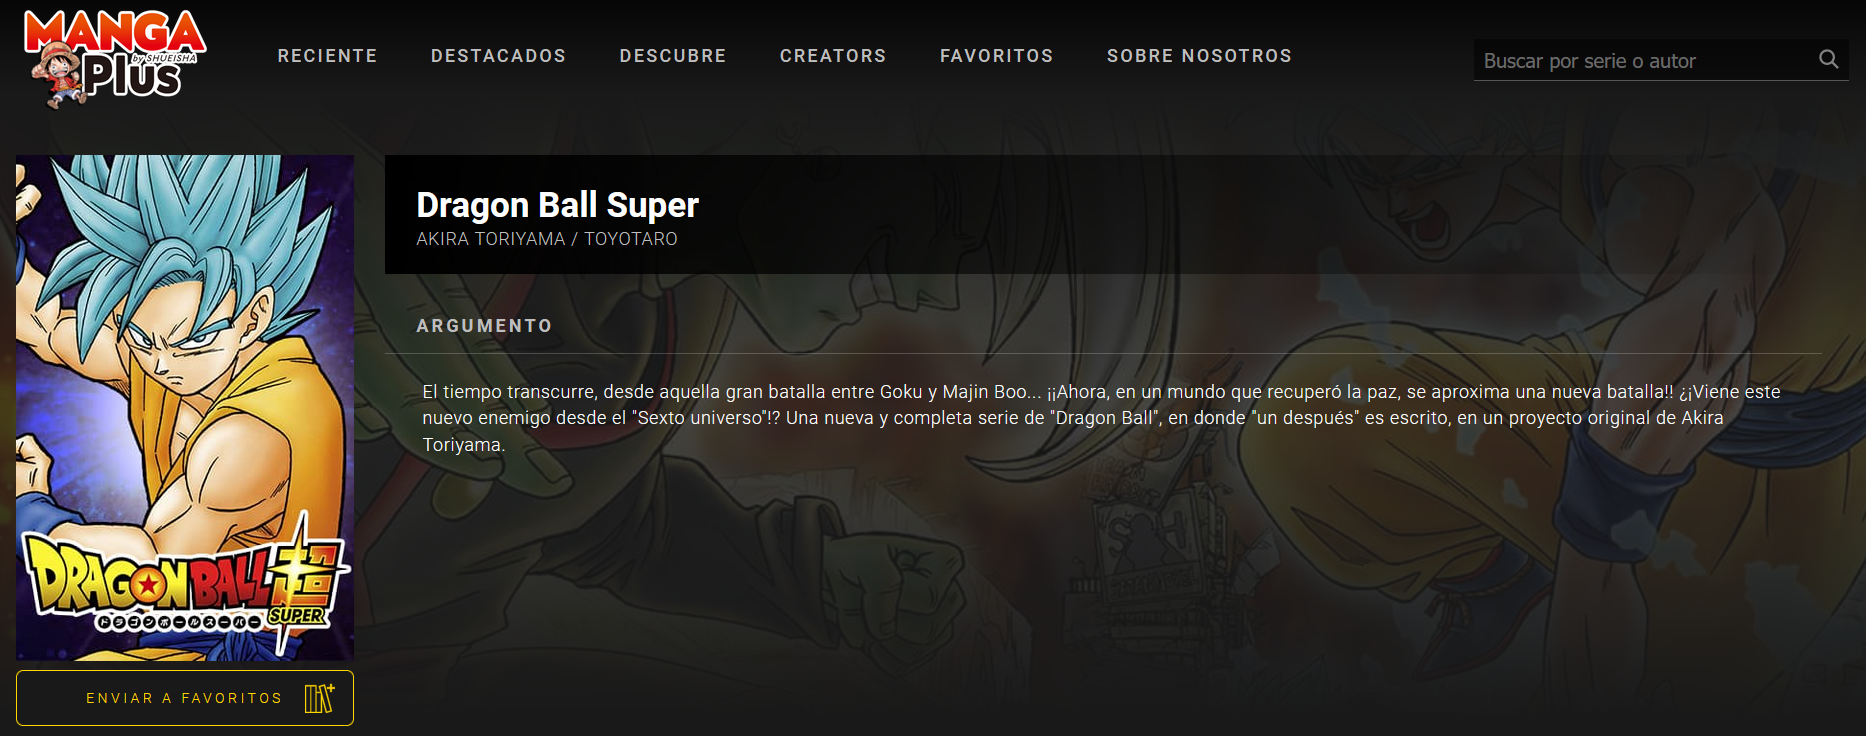 Dragon Ball Super, capítulo 94 ya disponible: cómo leer gratis en